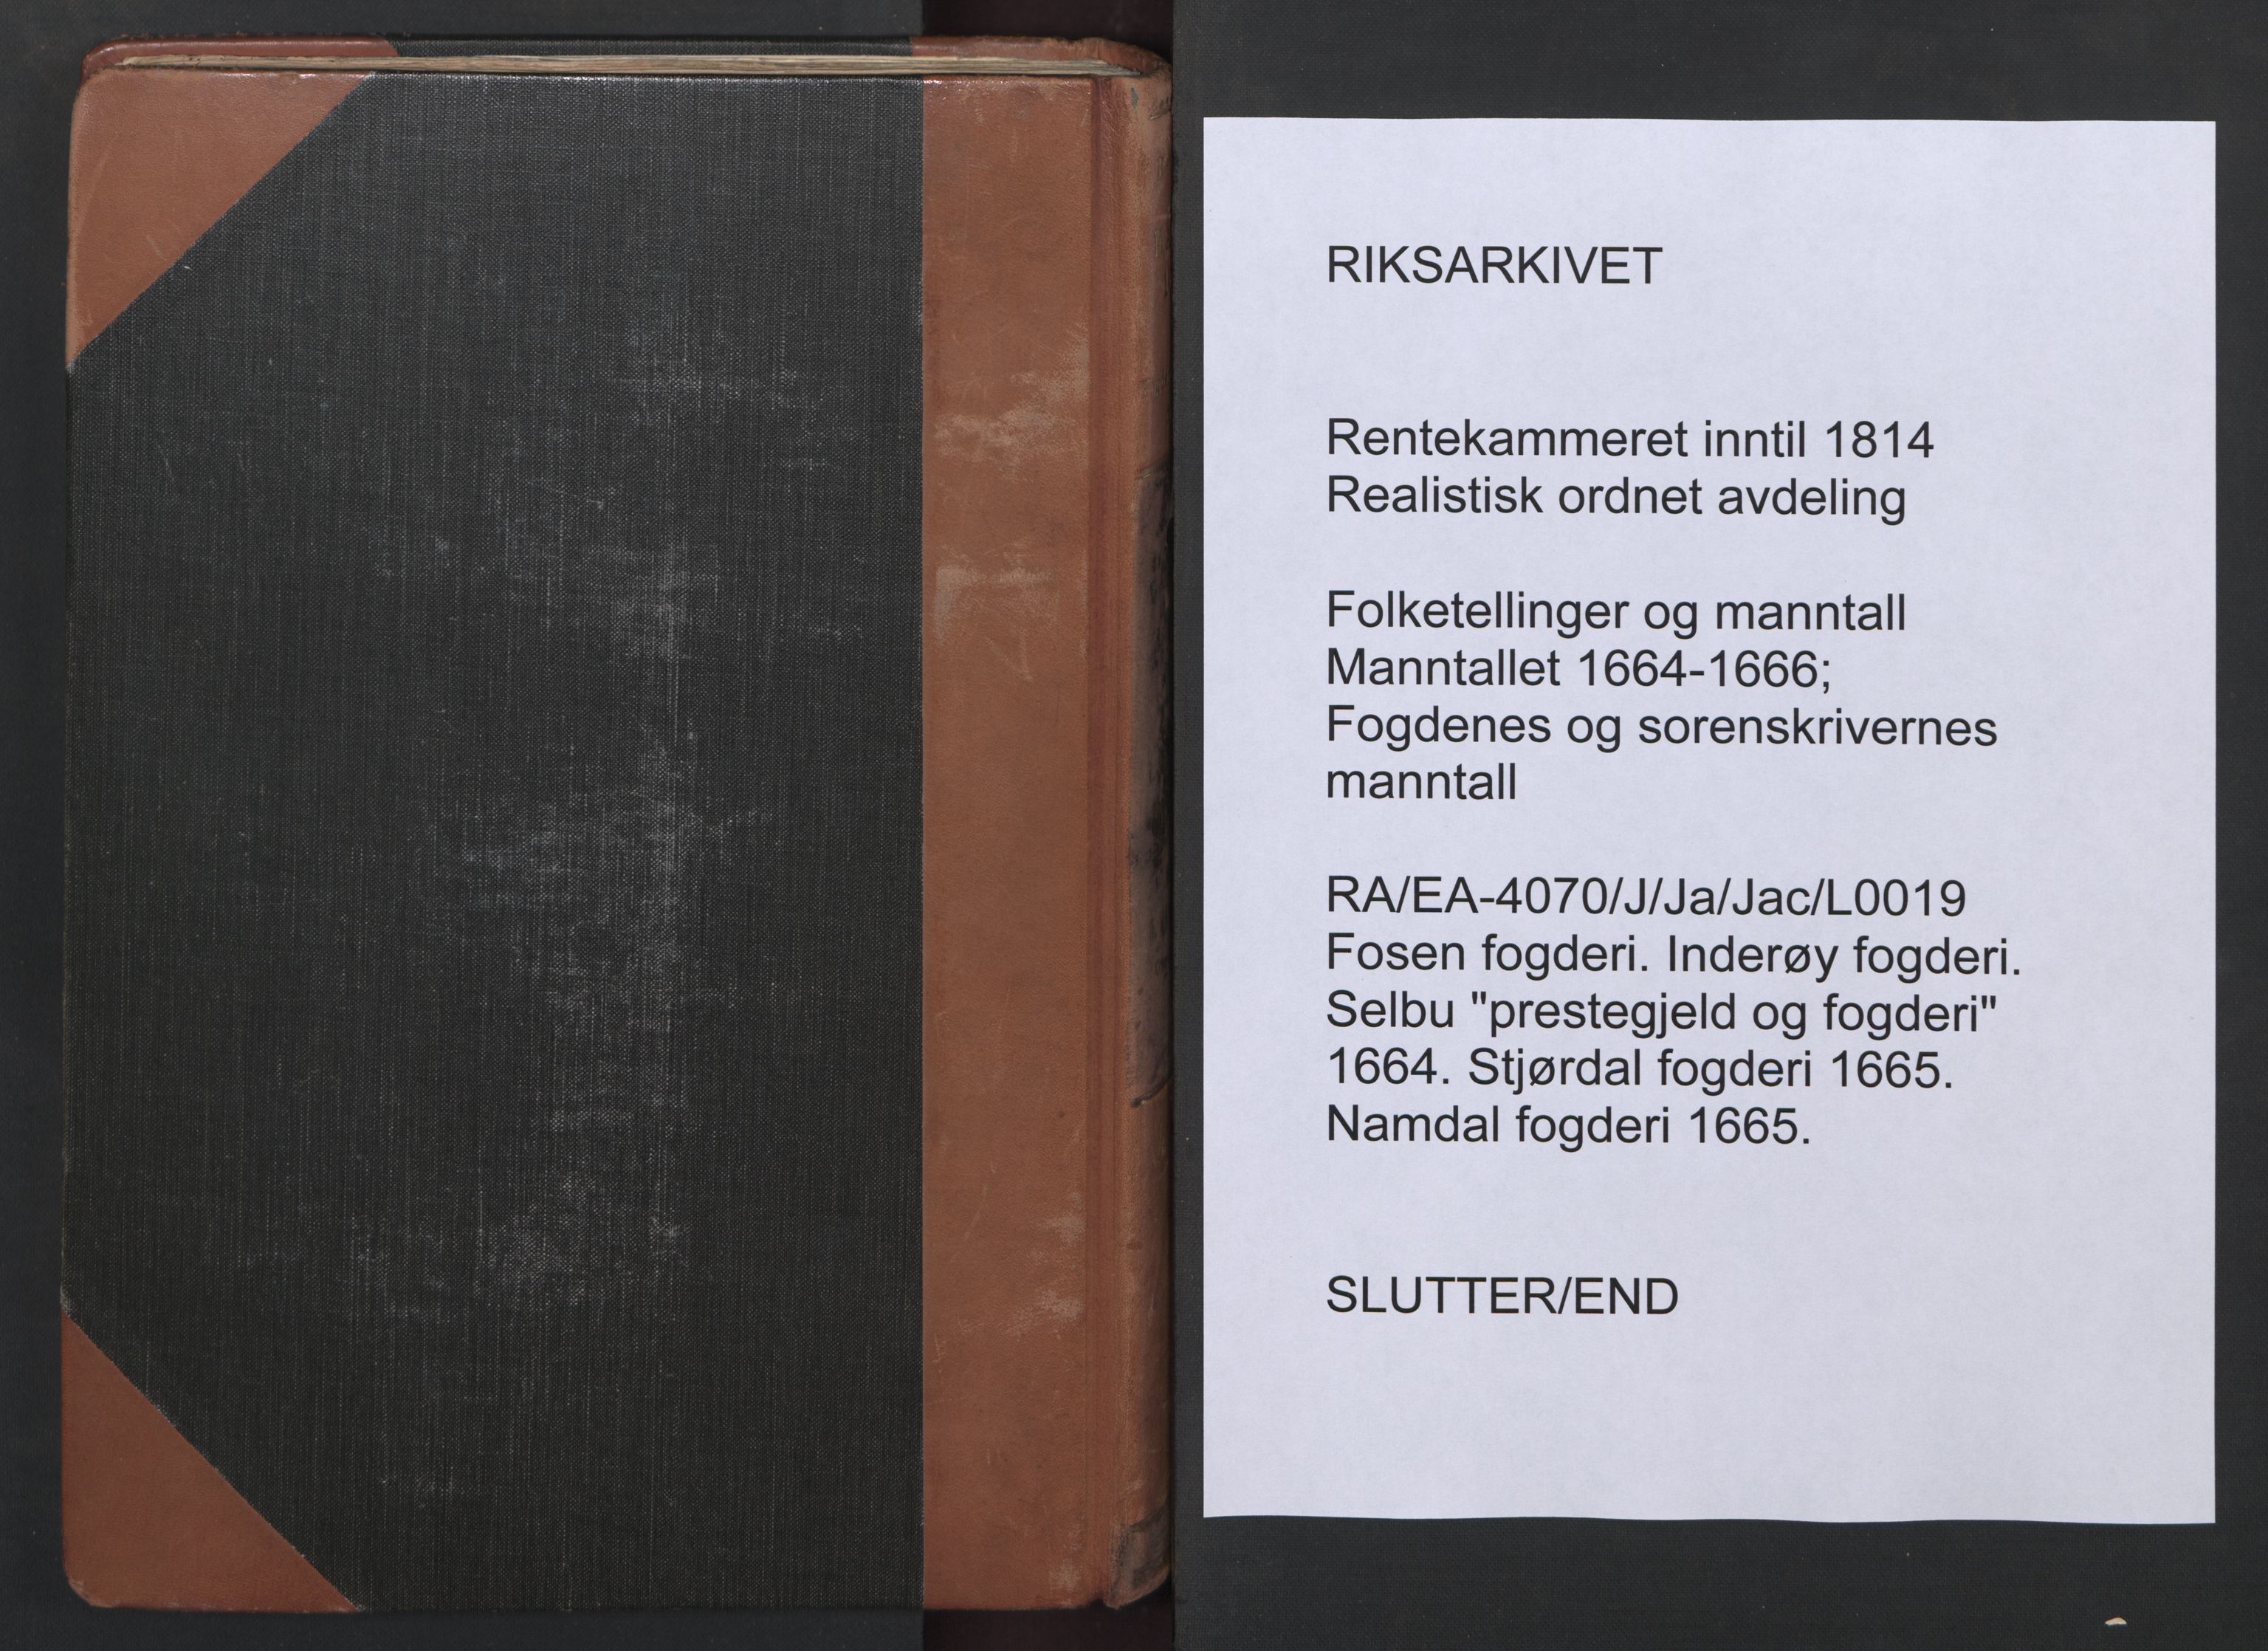 RA, Bailiff's Census 1664-1666, no. 19: Fosen fogderi, Inderøy fogderi, Selbu fogderi, Namdal fogderi and Stjørdal fogderi, 1664-1665